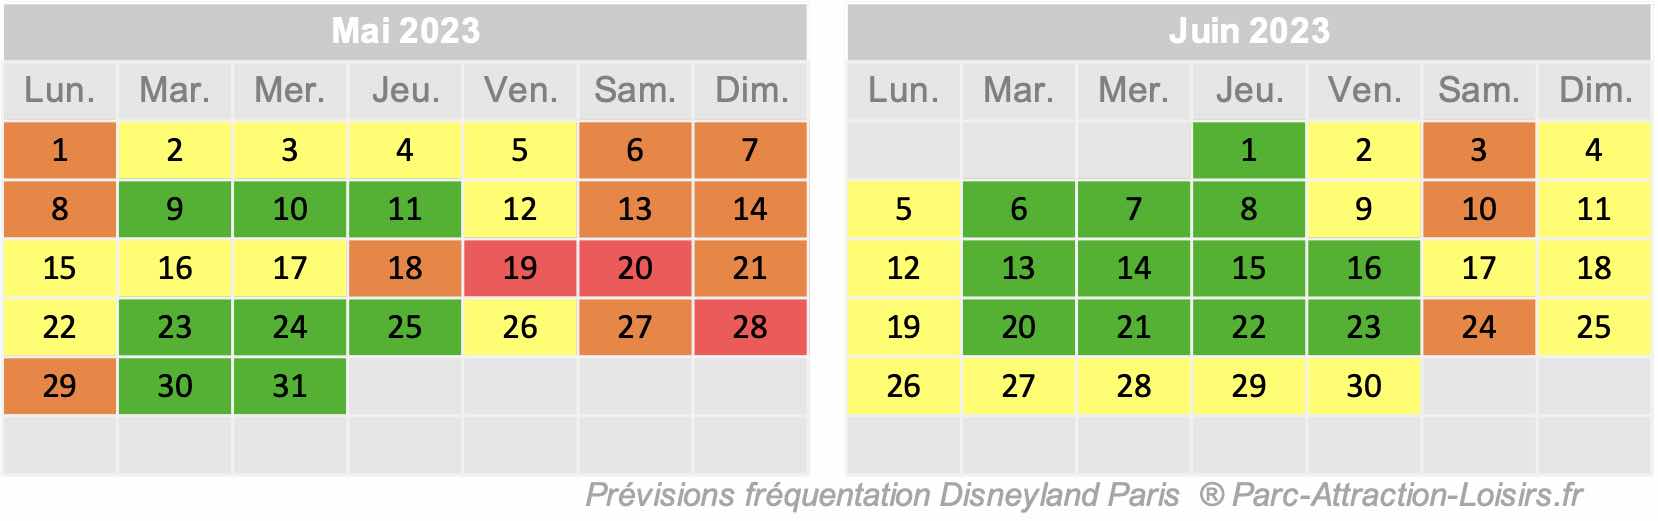 Affluence Disney 2023 2024 calendrier de la fréquentation